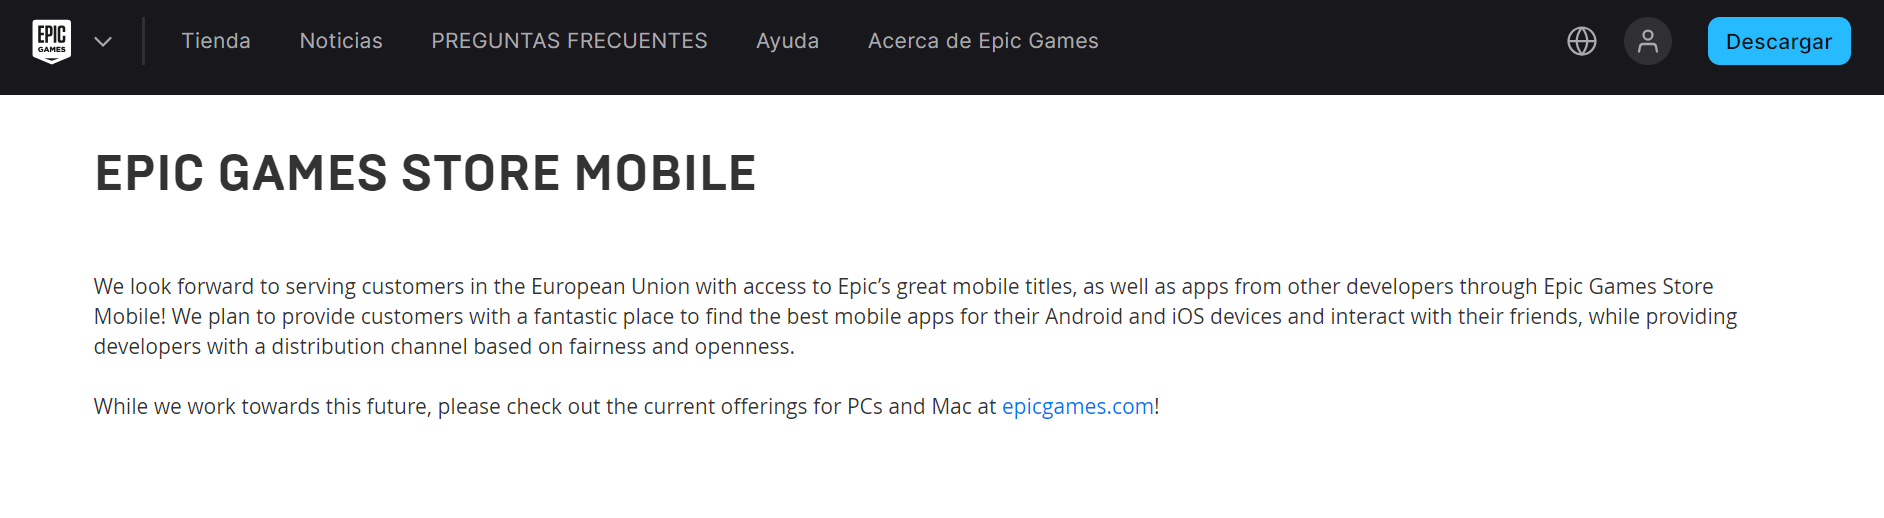 Loja de jogos épicos para Android